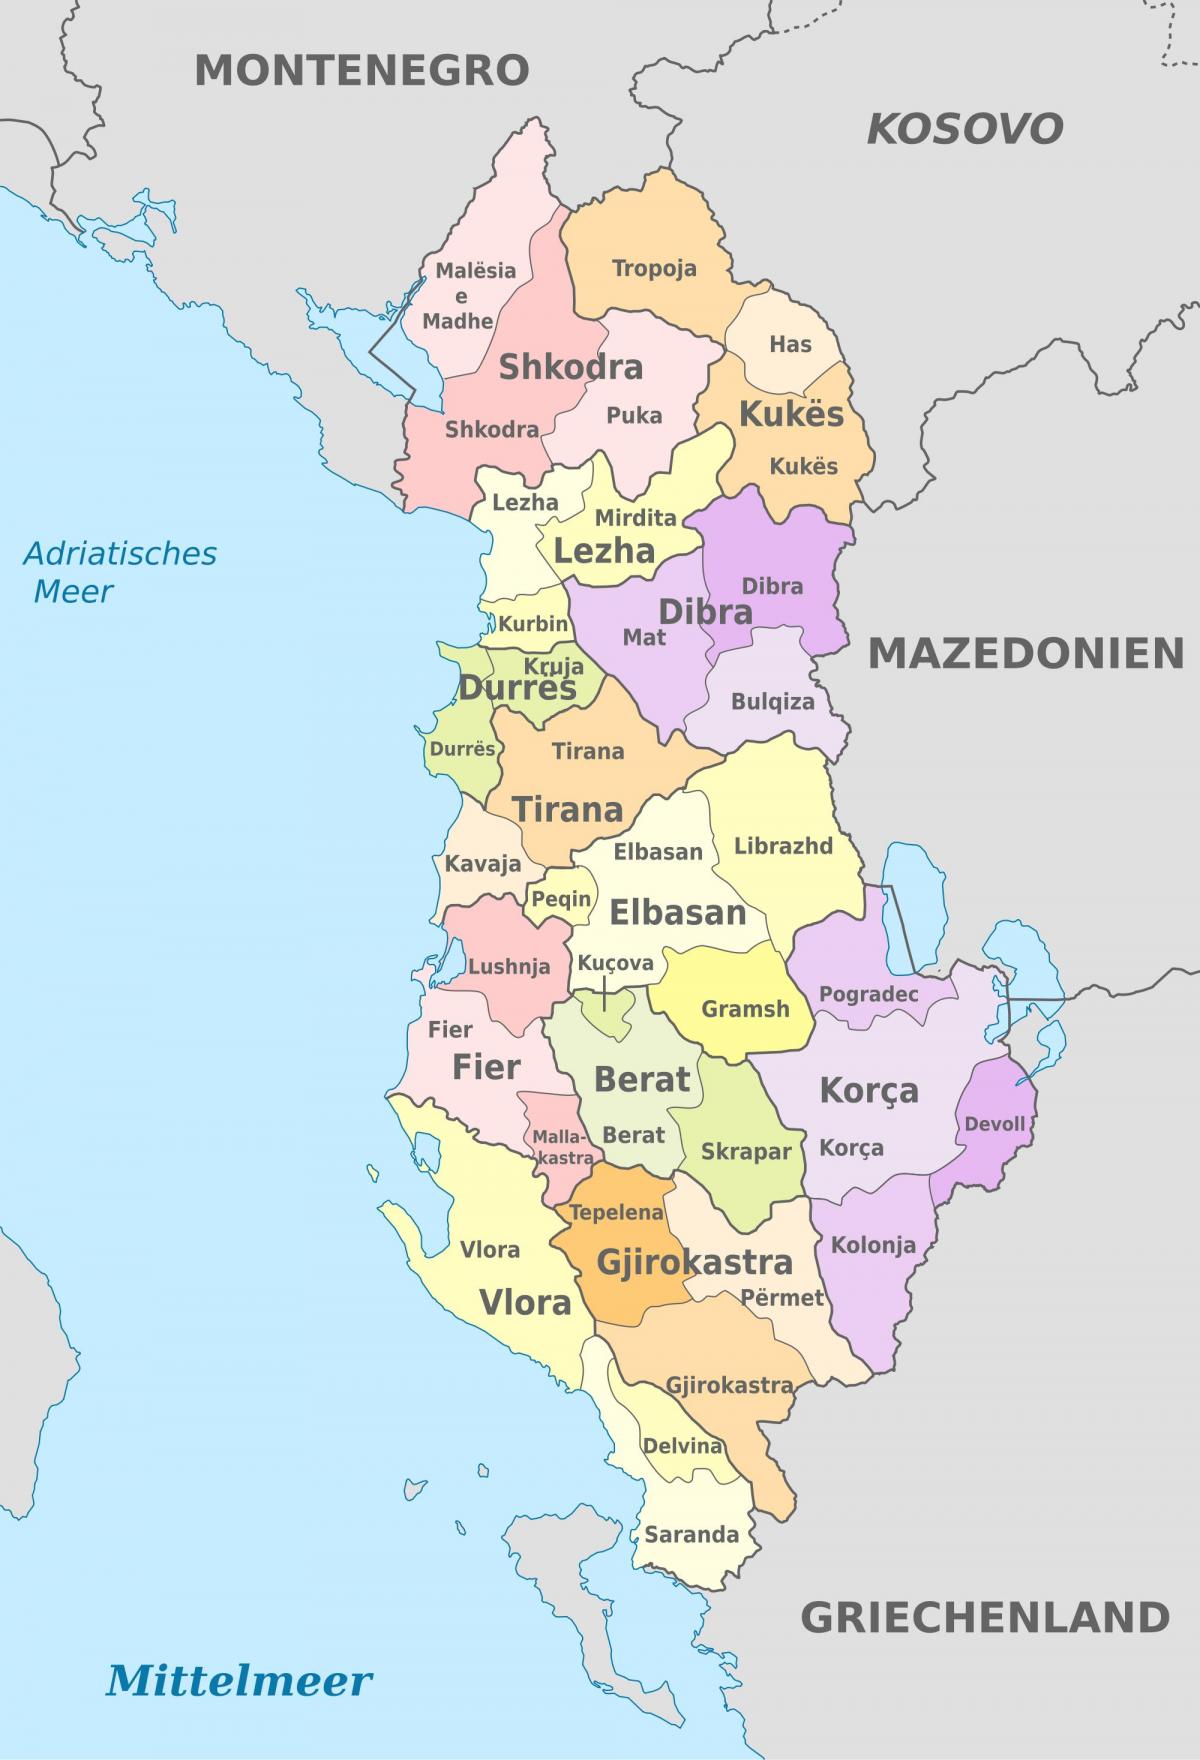 Albanien politische Landkarte - Karte von Albanien in der politischen